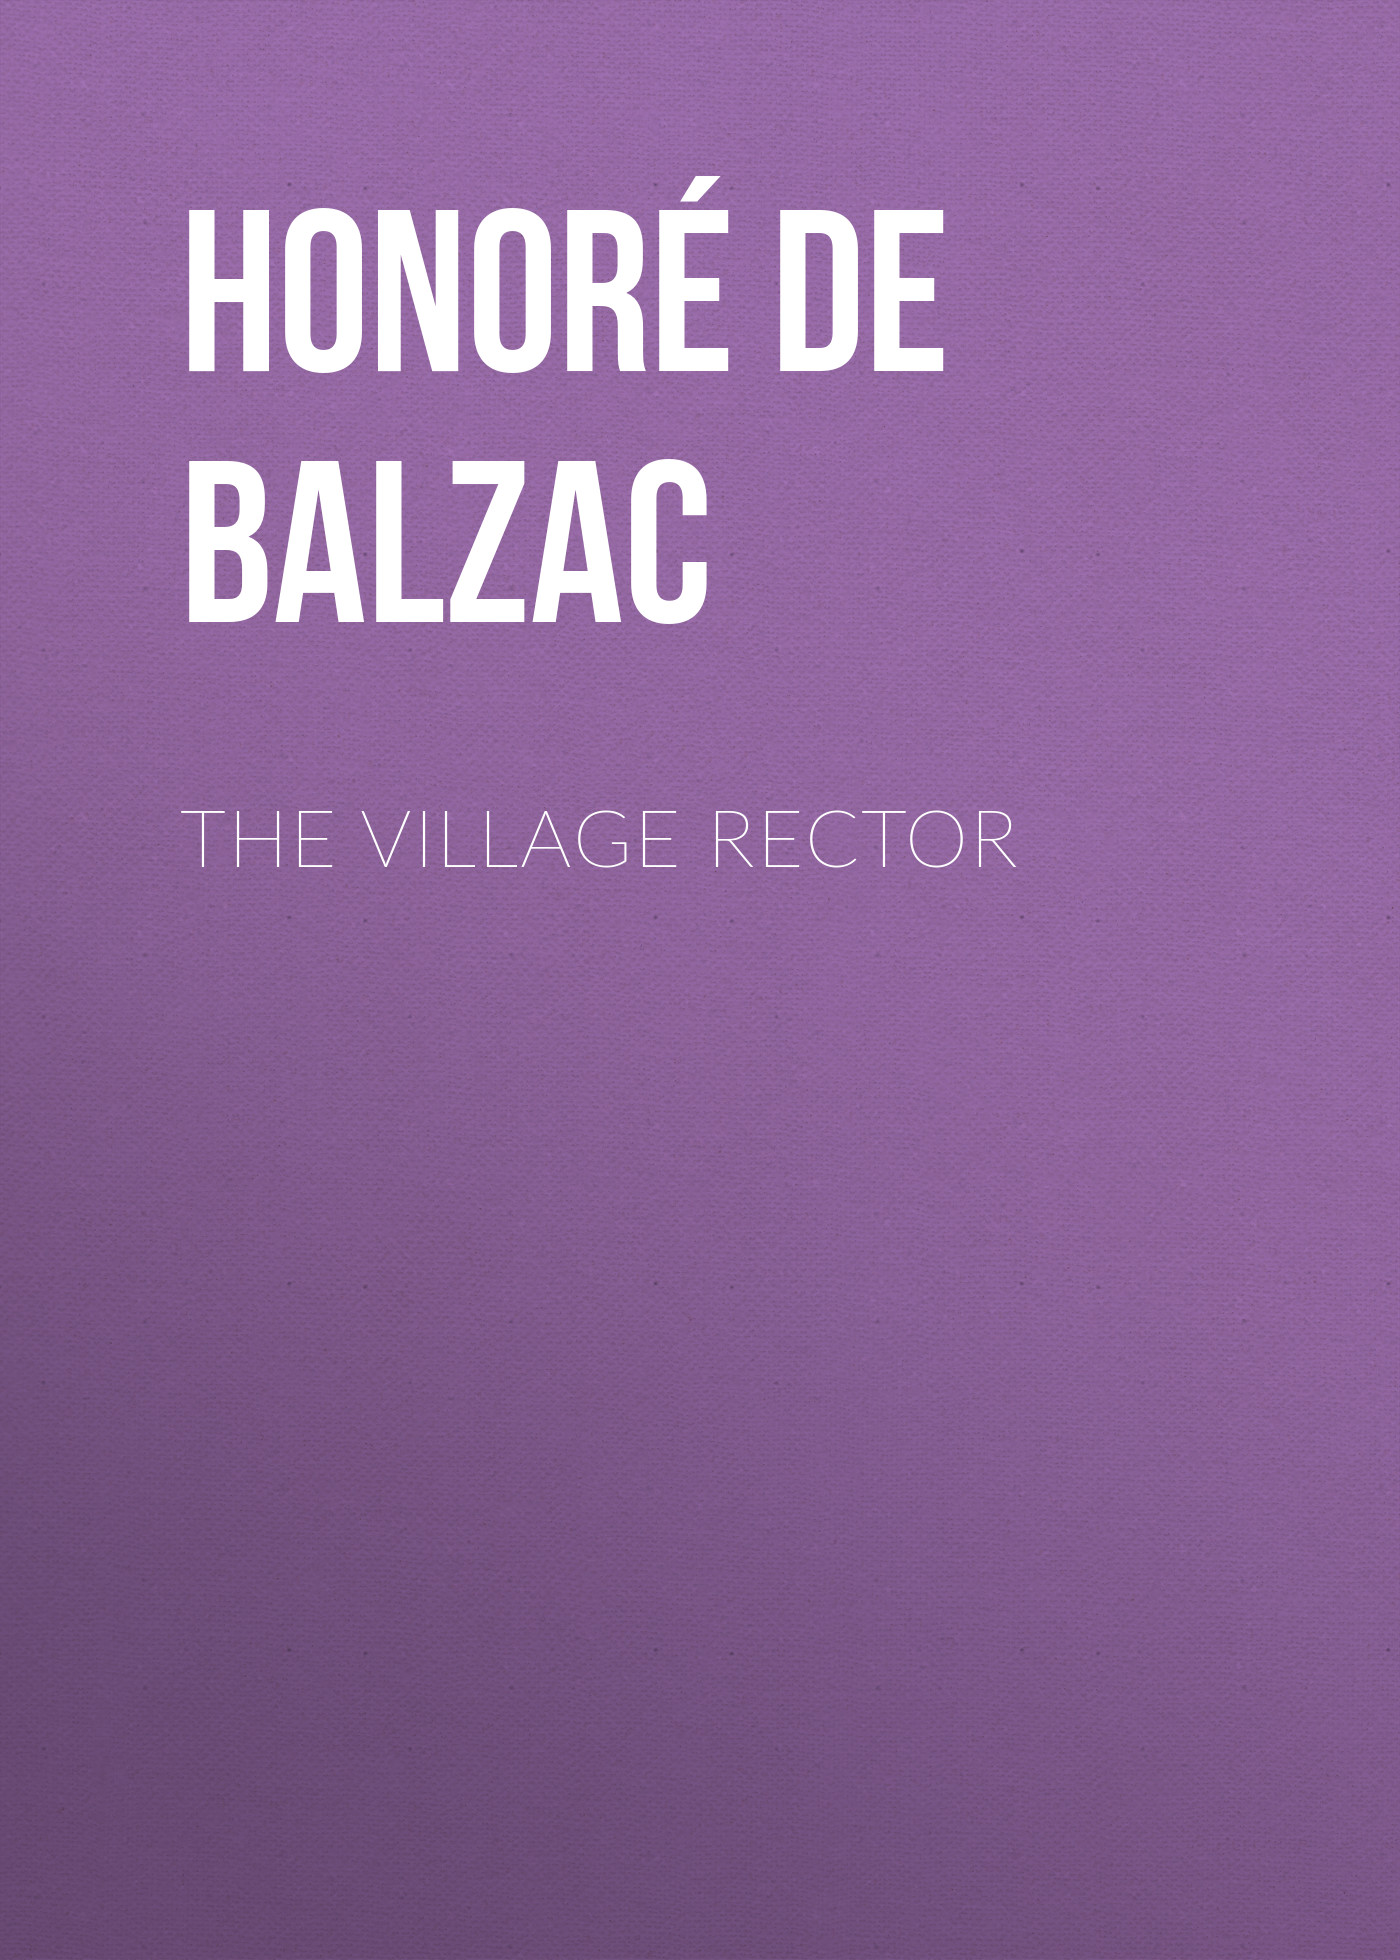 Книга The Village Rector из серии , созданная Honoré Balzac, может относится к жанру Литература 19 века, Зарубежная старинная литература, Зарубежная классика. Стоимость электронной книги The Village Rector с идентификатором 25020395 составляет 0 руб.